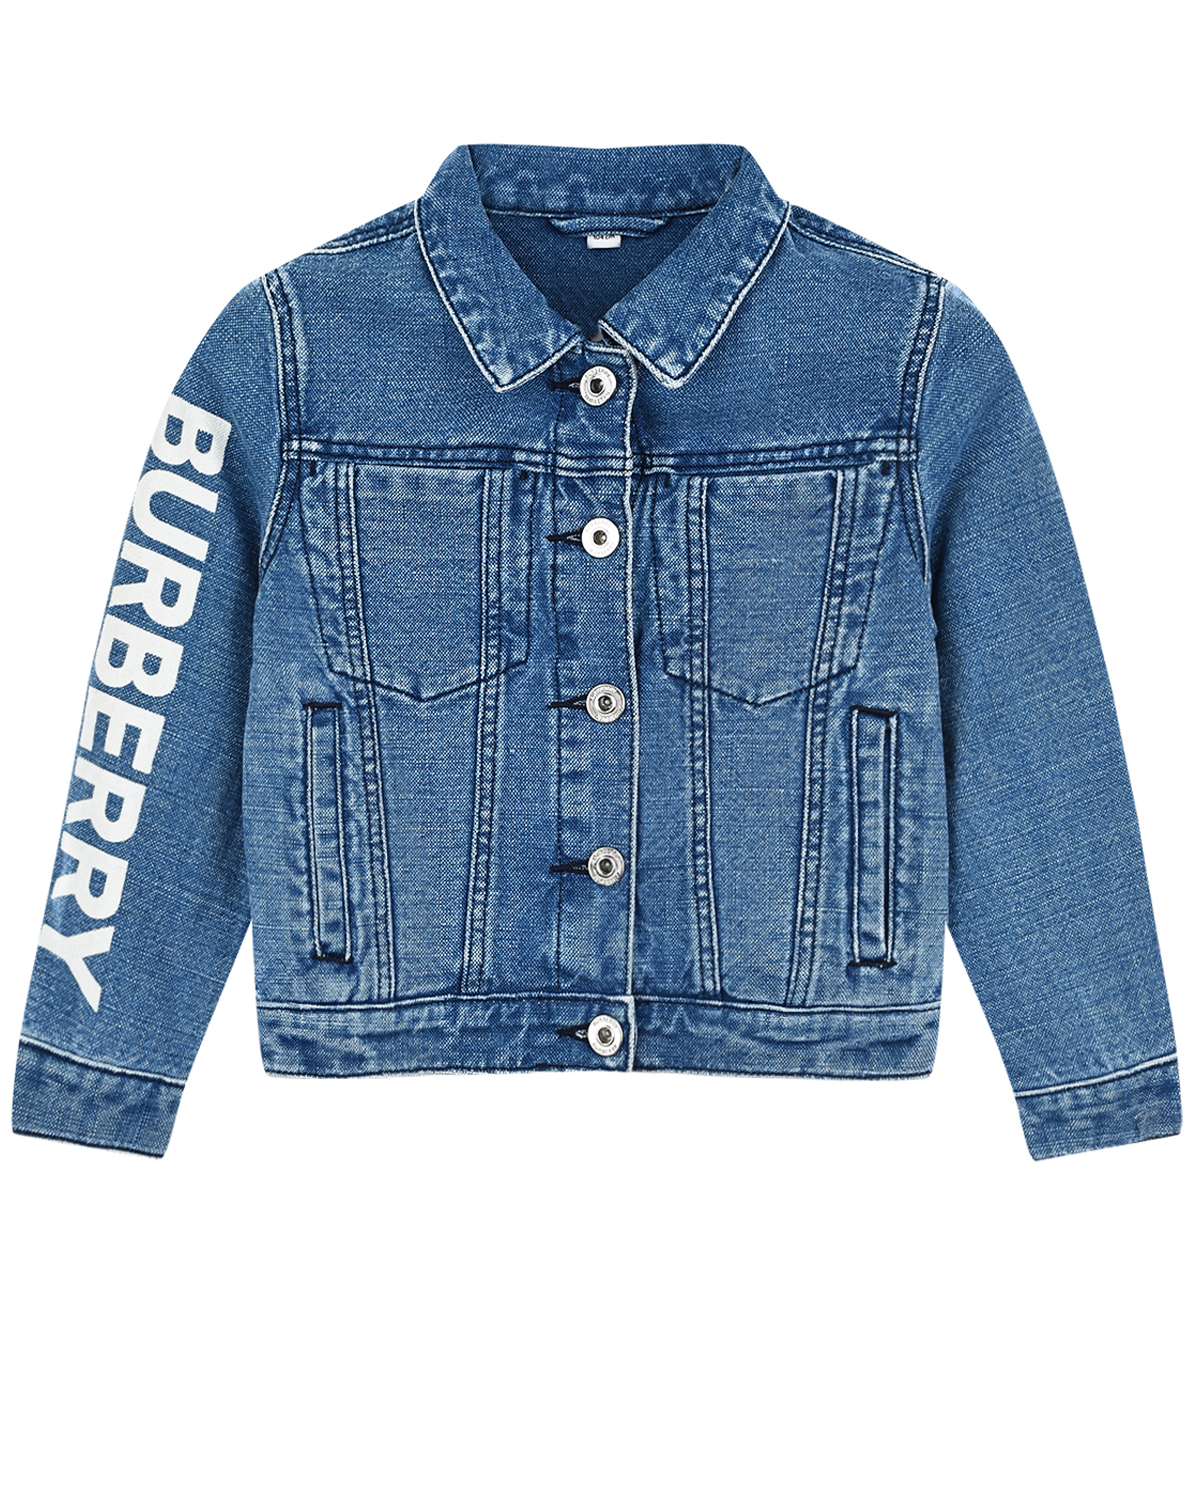 Синяя джинсовая куртка с логотипом на рукаве Burberry детская, размер 98, цвет синий